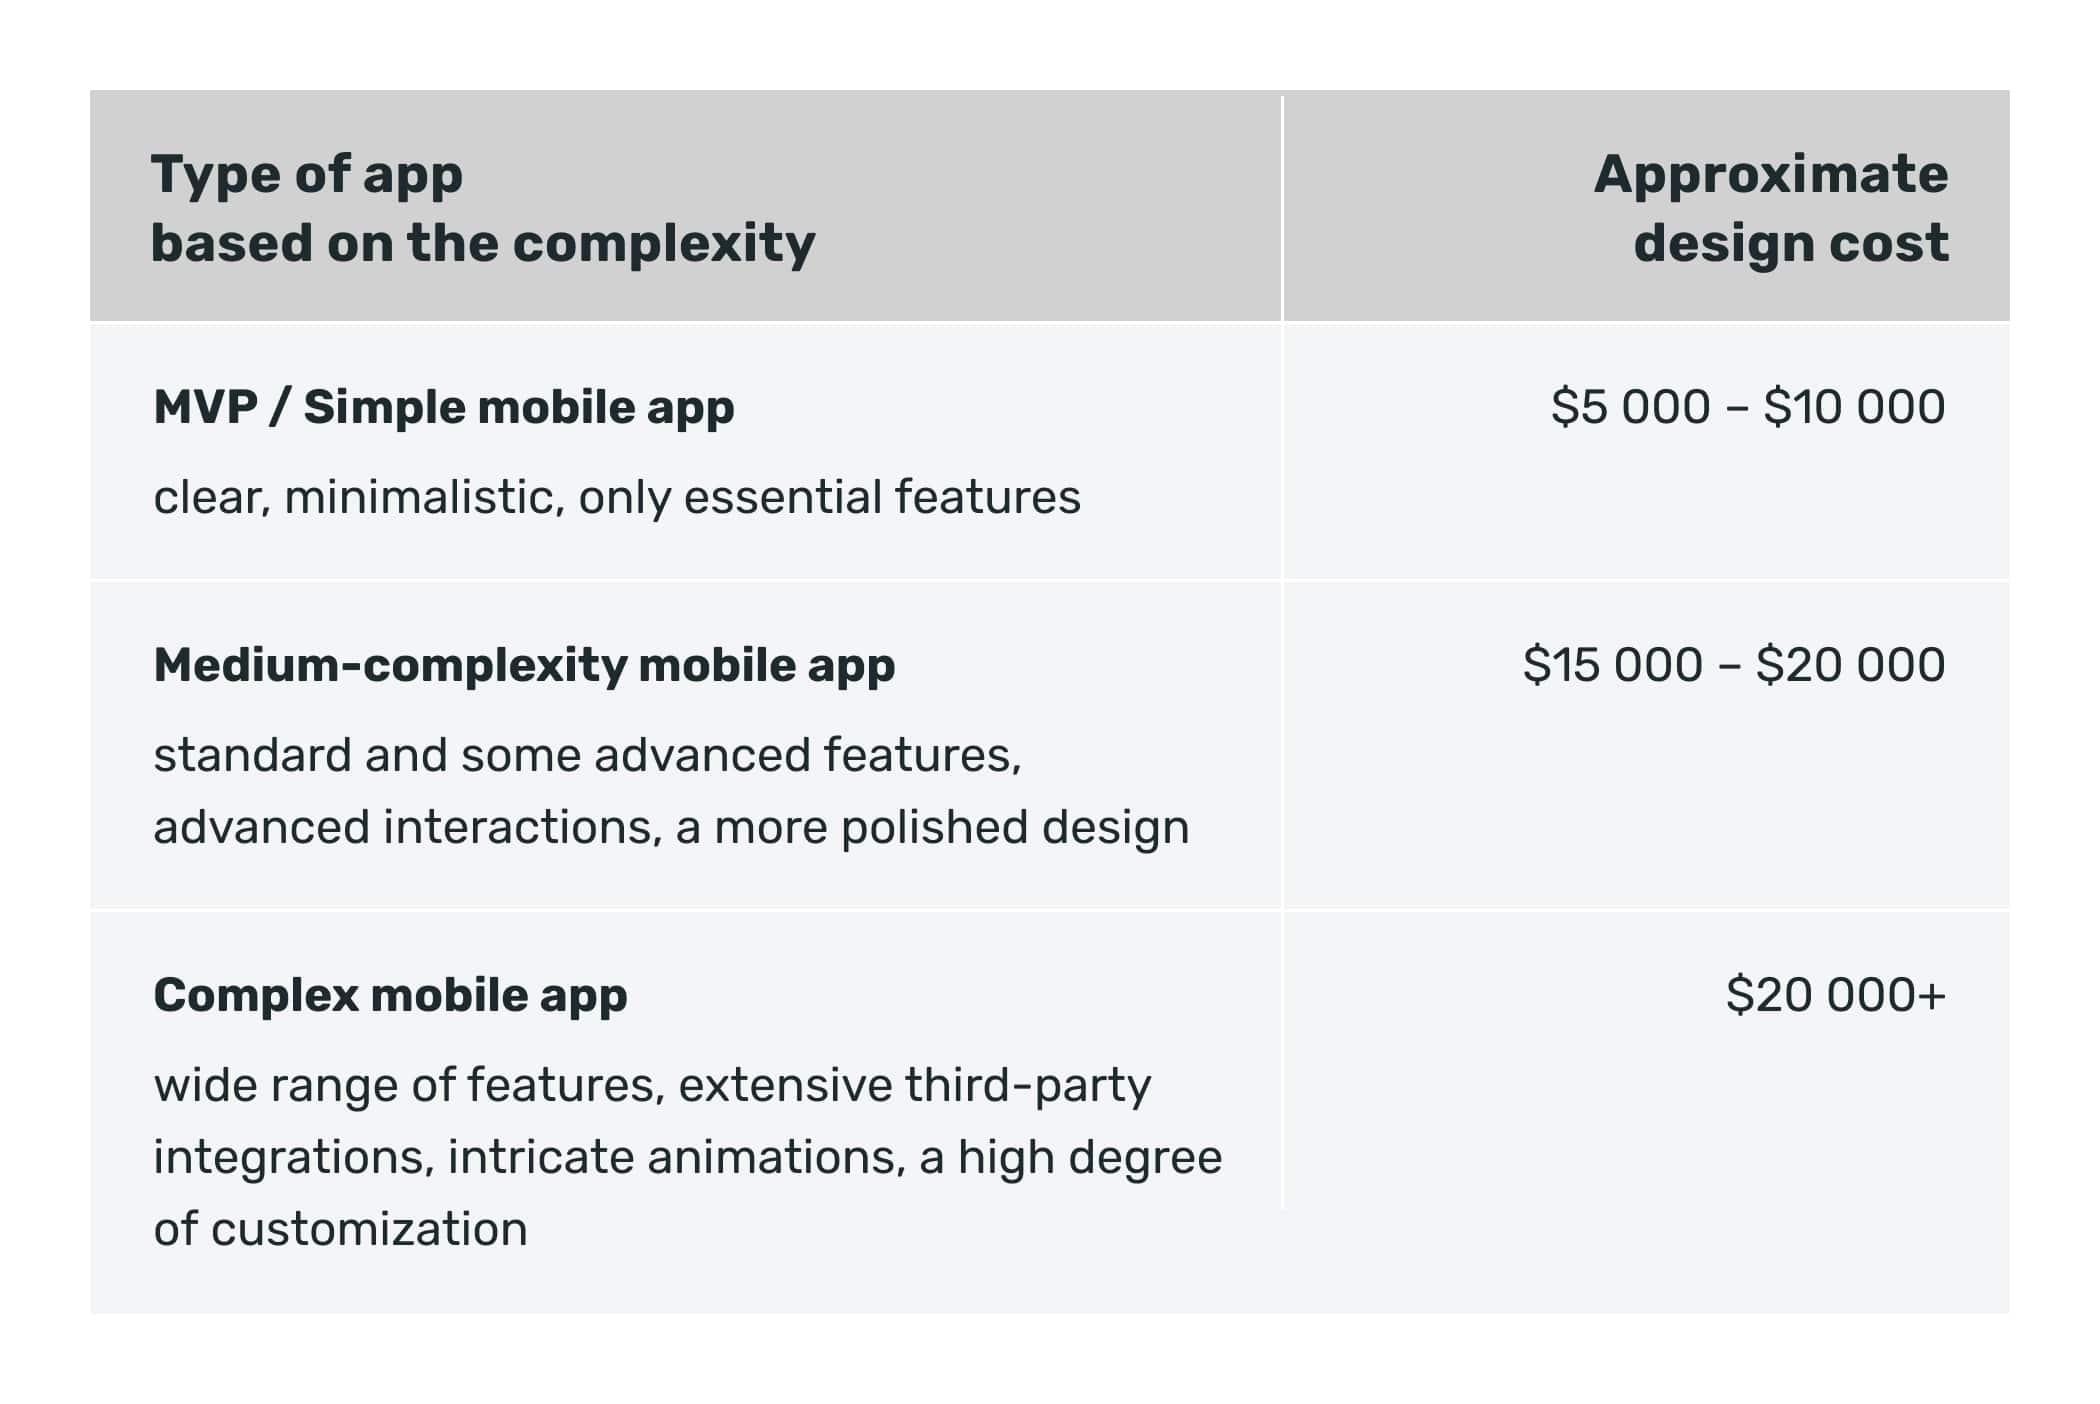 app design cost depending on app complexity